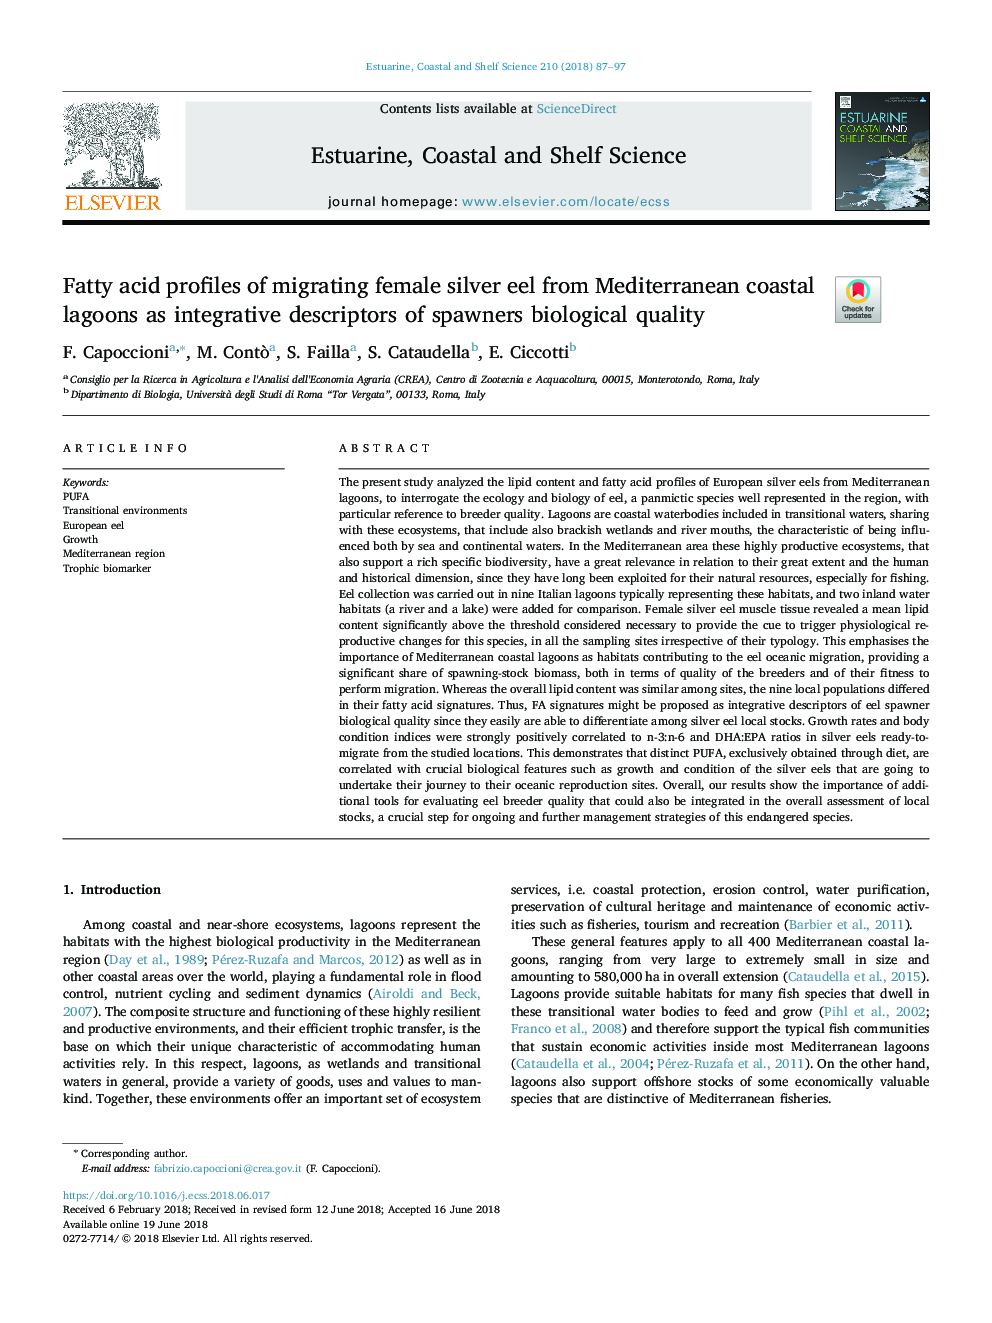 پروفایل اسید های چرب مگس نقره ای زنانه از تالاب های دریای مدیترانه به عنوان یکپارچه سازی توصیفگرهای کیفیت بیولوژیکی 